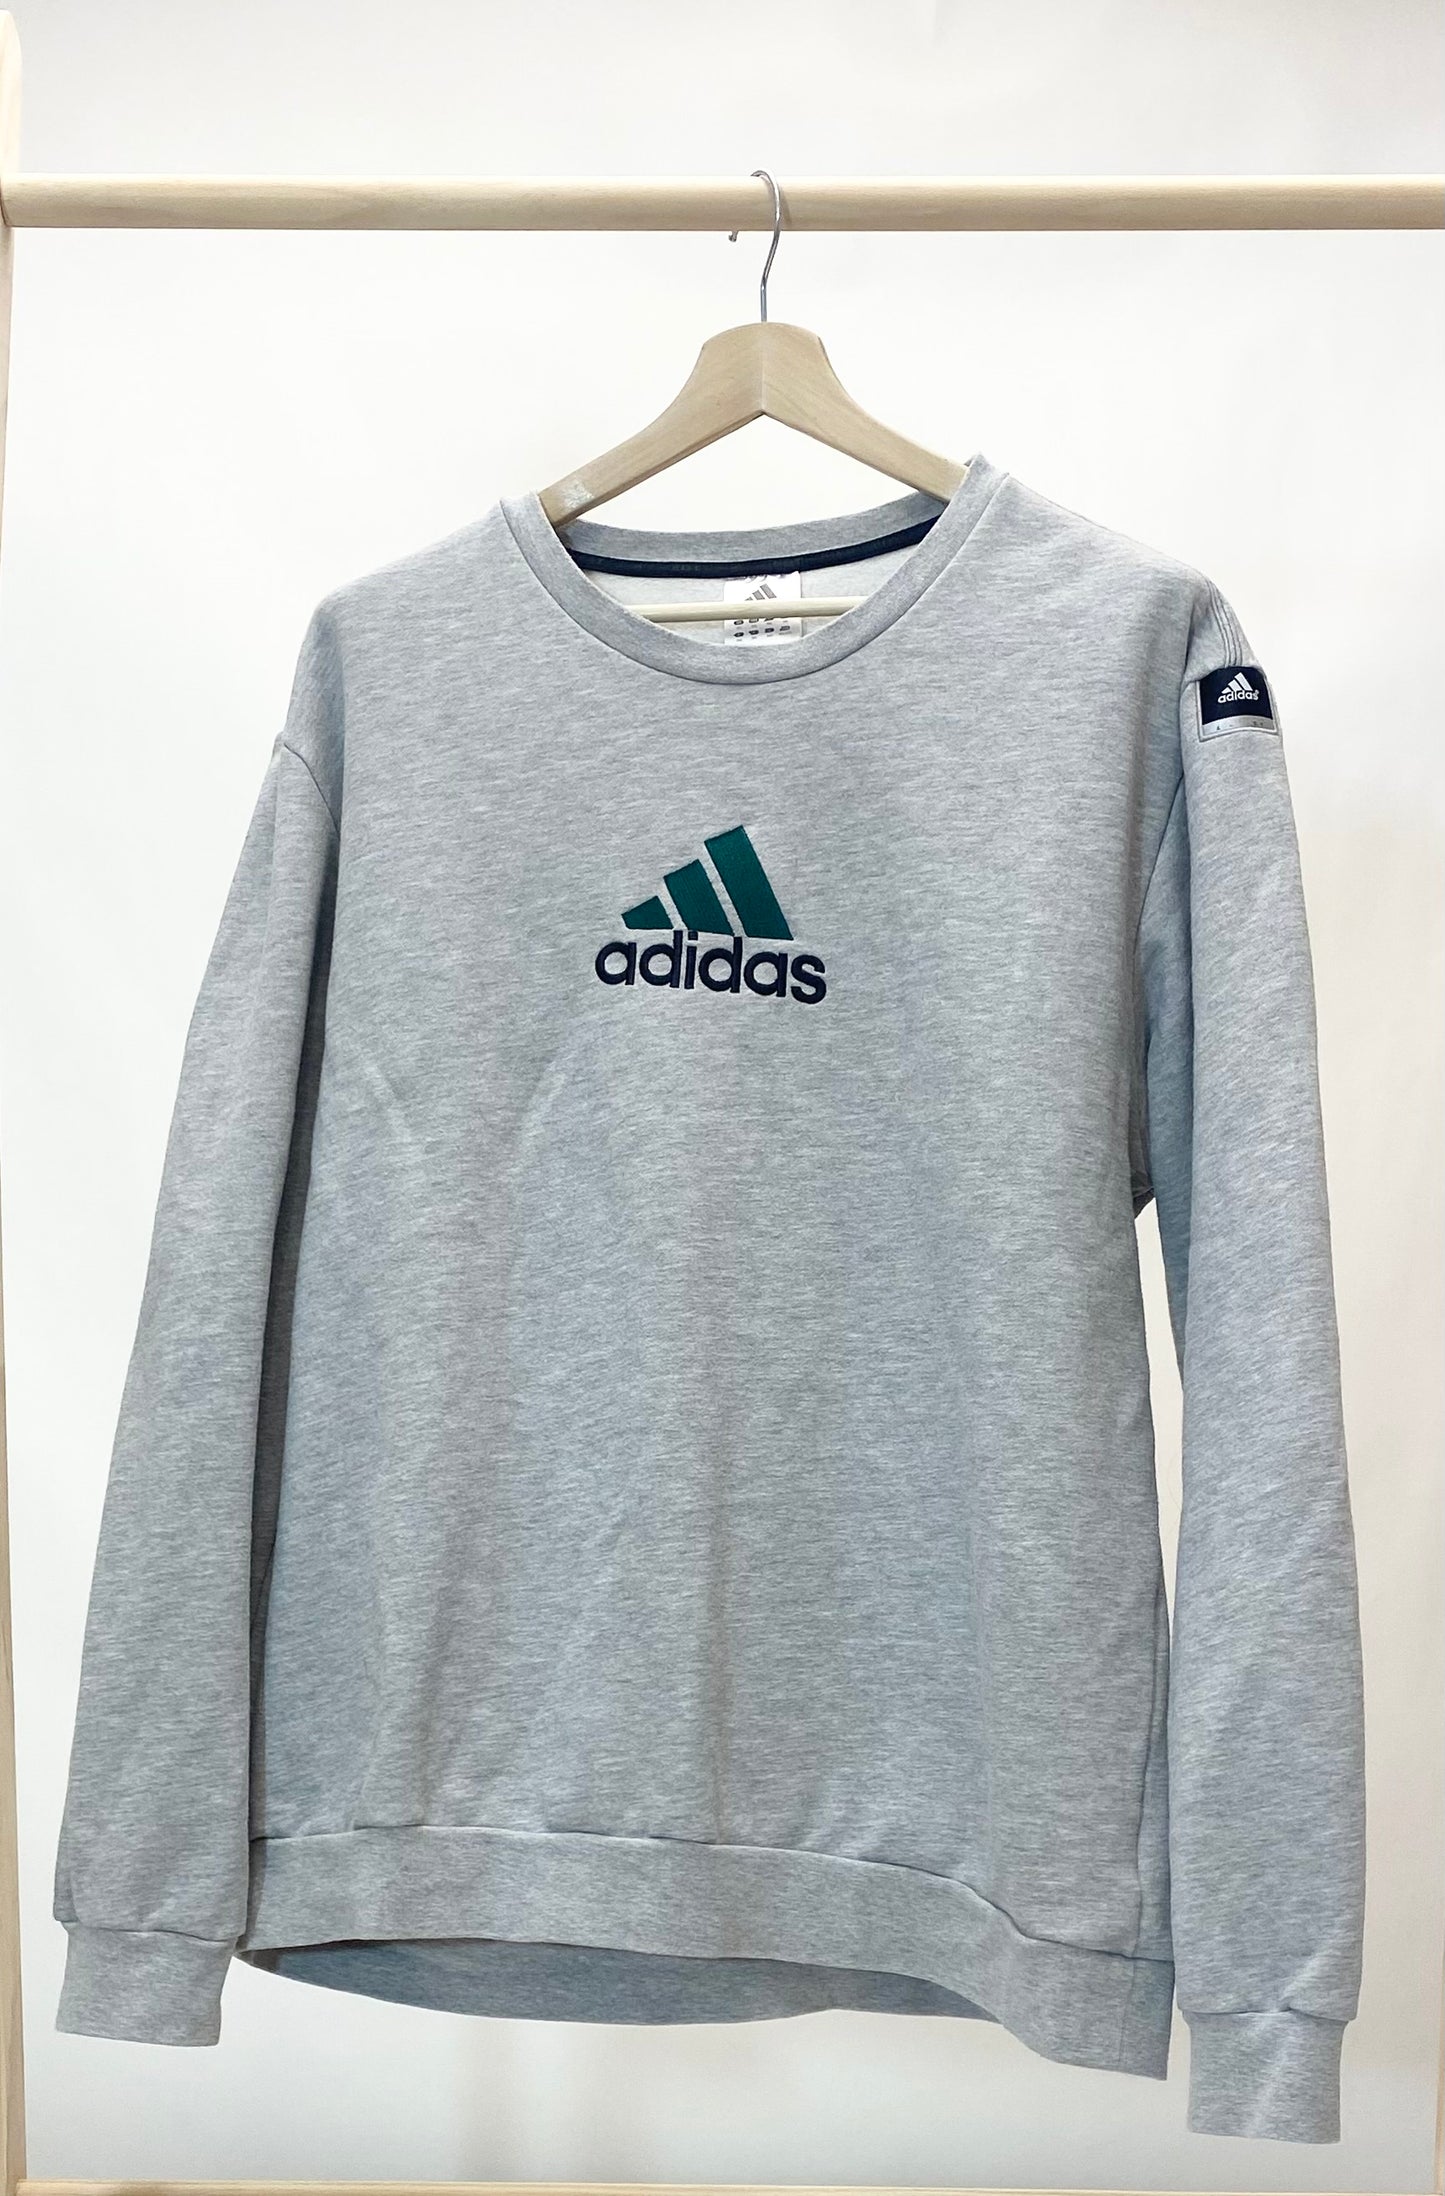 Adidas - Vintage Sweatshirt